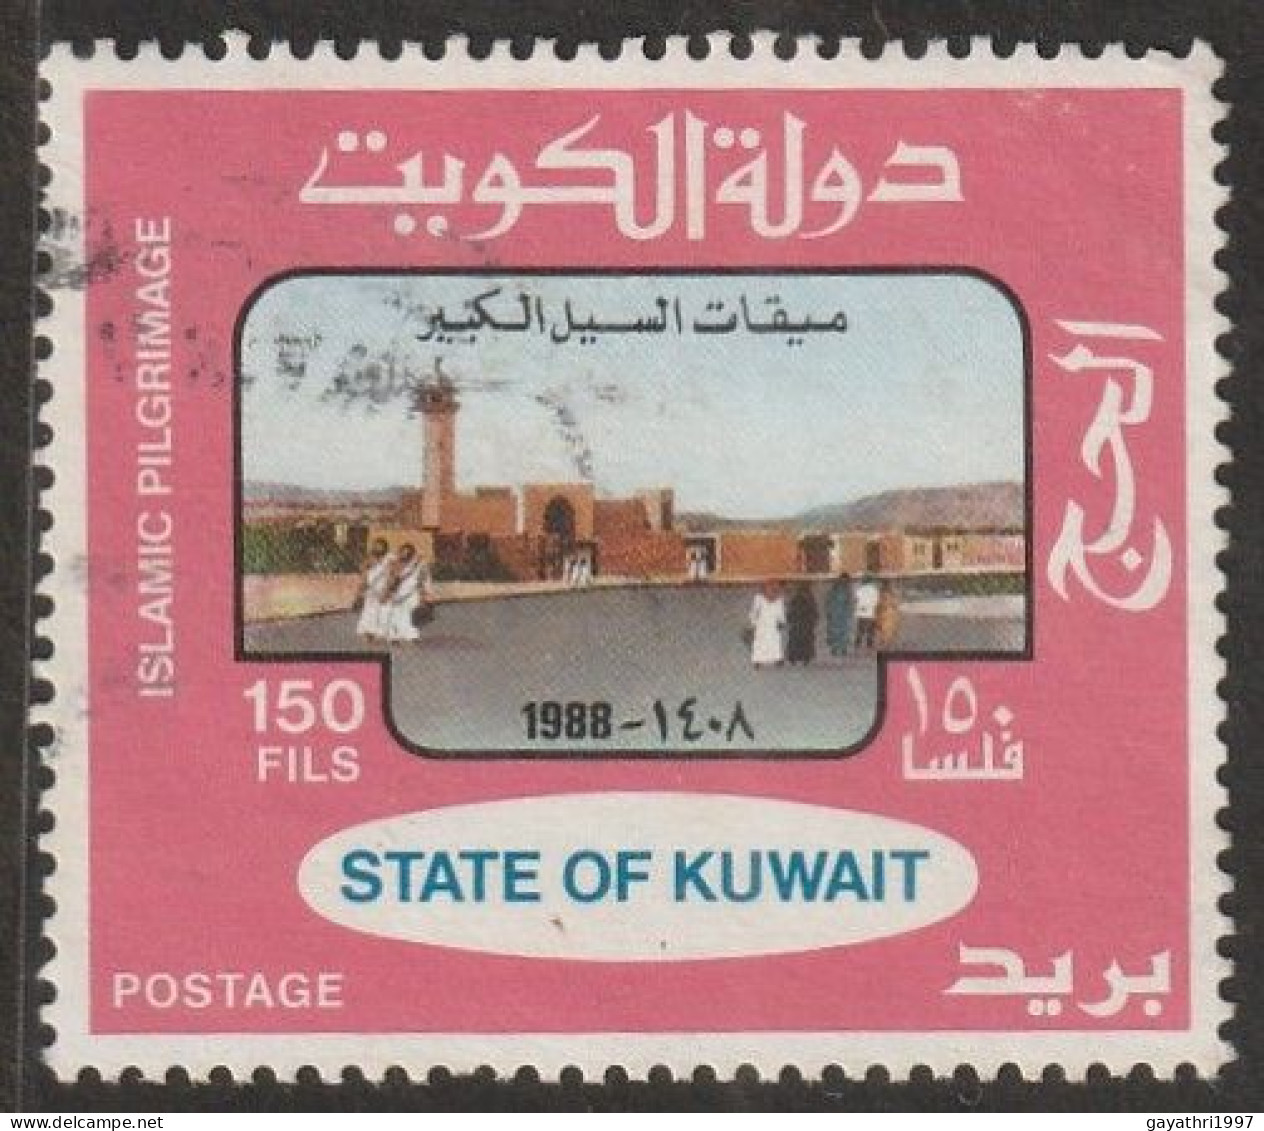 Kuwait 1988 Islamic Pilgrimage Used (S-22) - Kuwait